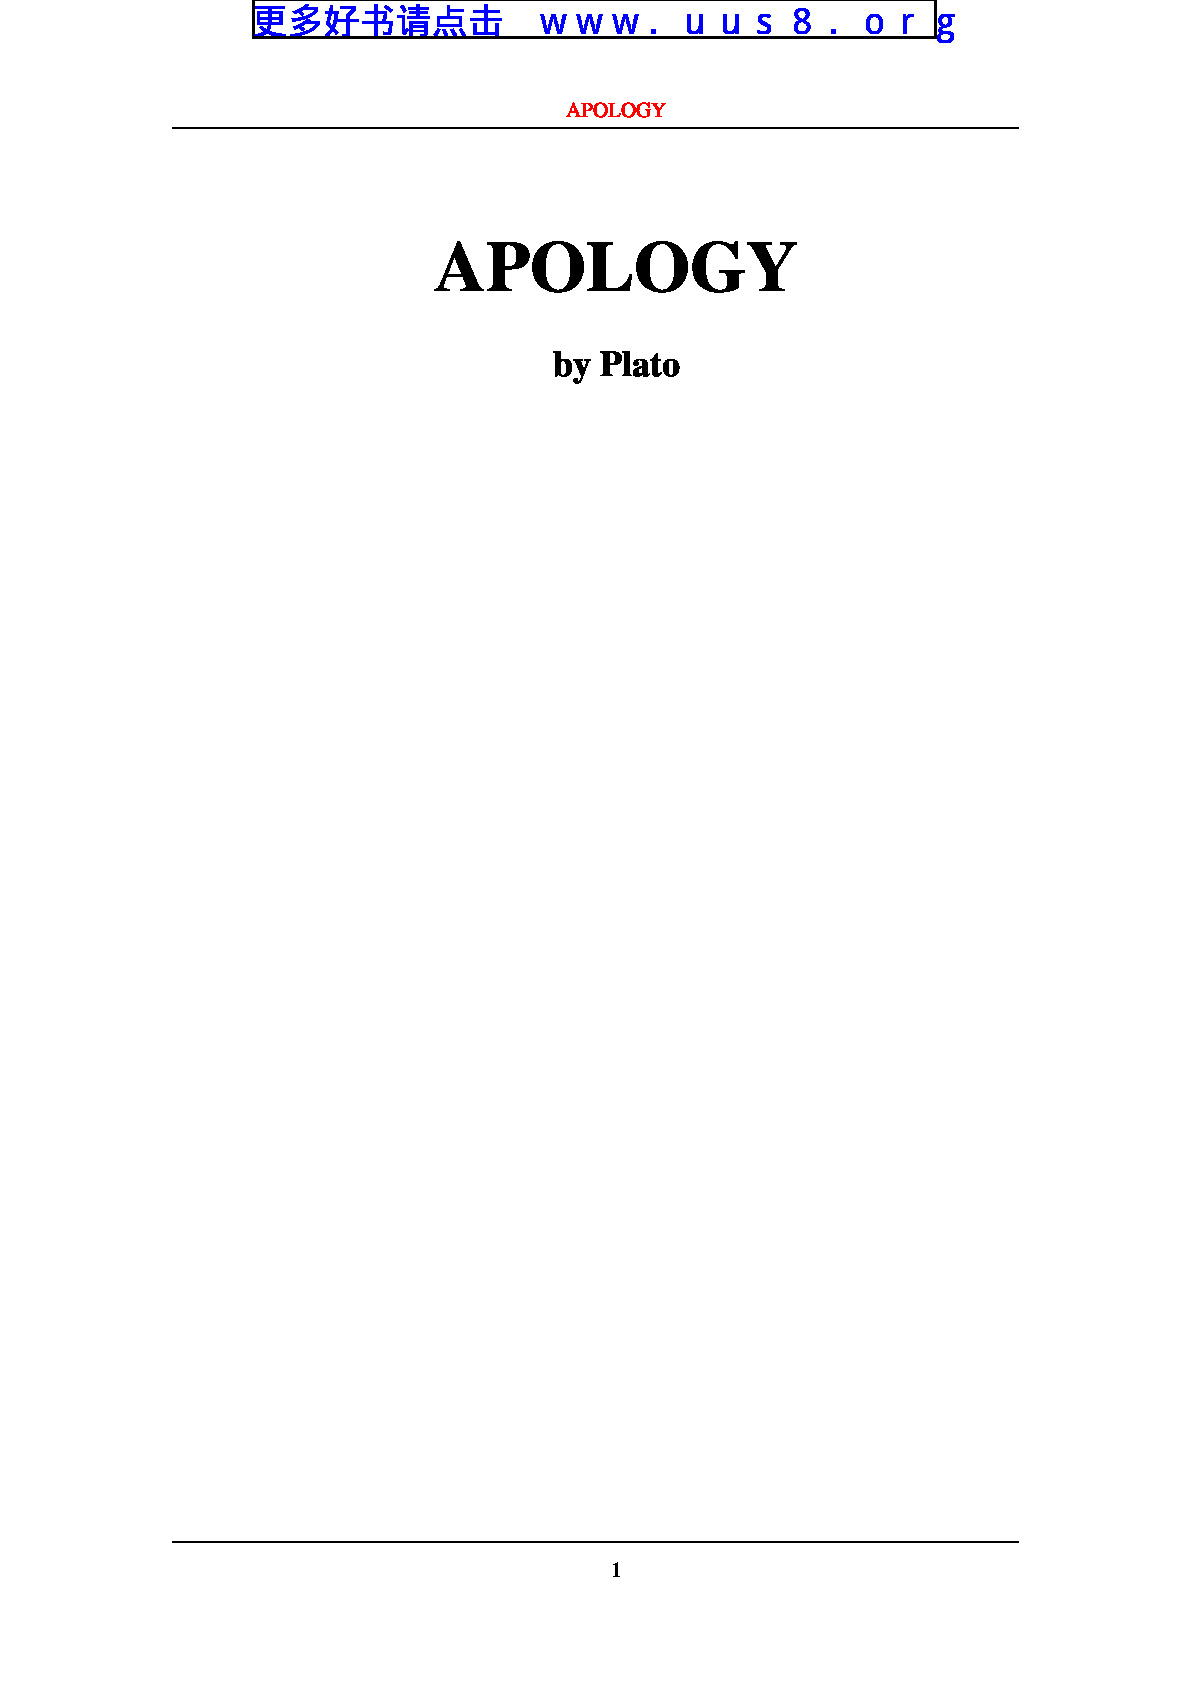 APOLOGY(致歉)